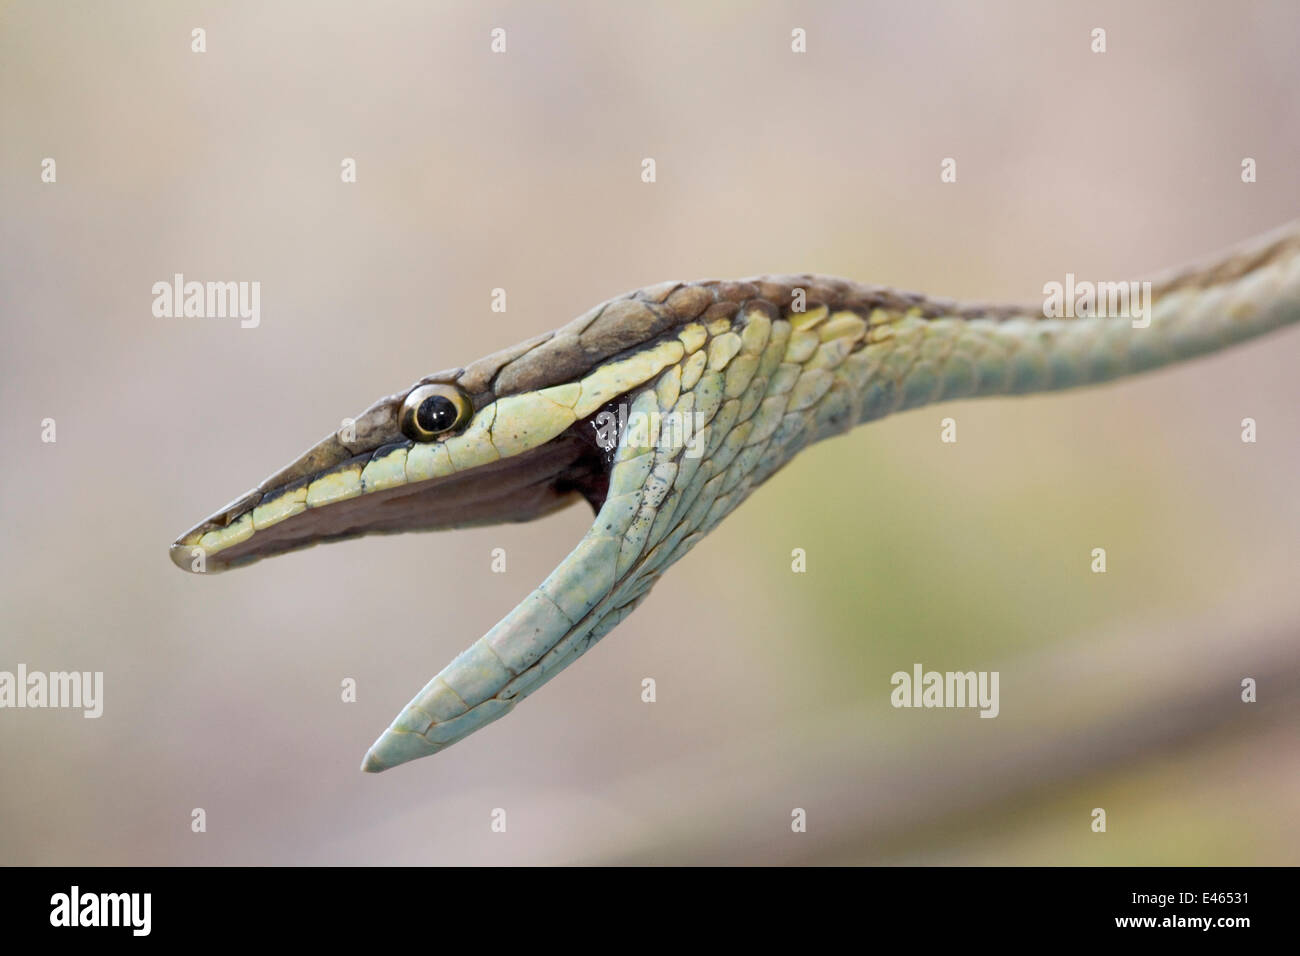 / Marrón mexicana Vid Snake (Oxybelis aeneus) con la boca abierta. María Madre Isla, Reserva de la Biosfera de Islas Marías, Mar de Cortez (Golfo de California), México, Junio. Foto de stock